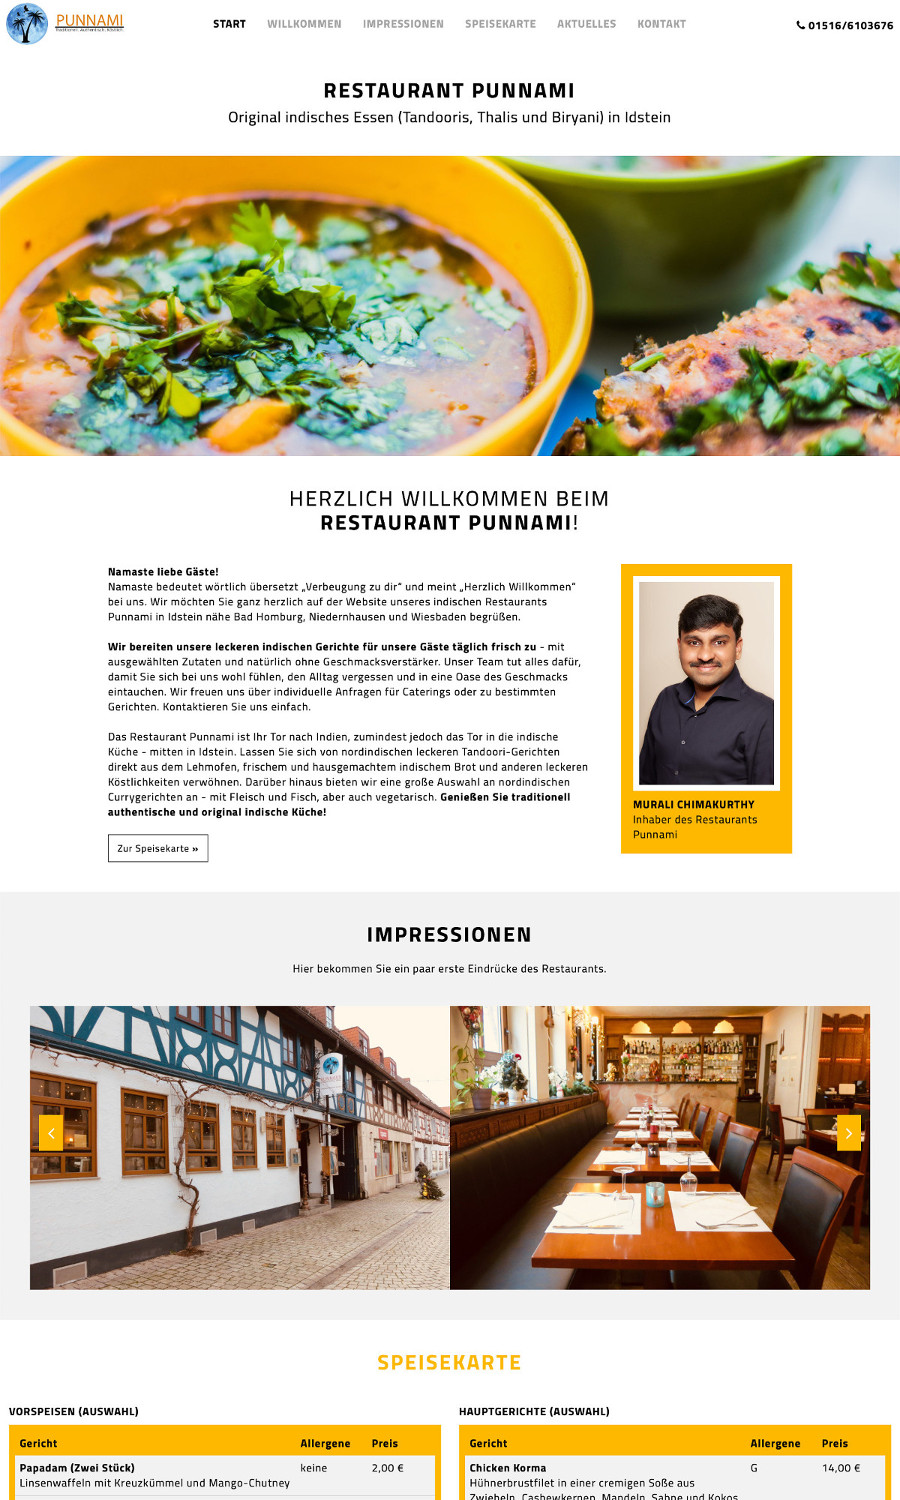 Referenz: Restaurant Punnami - Original indisches Essen in Idstein